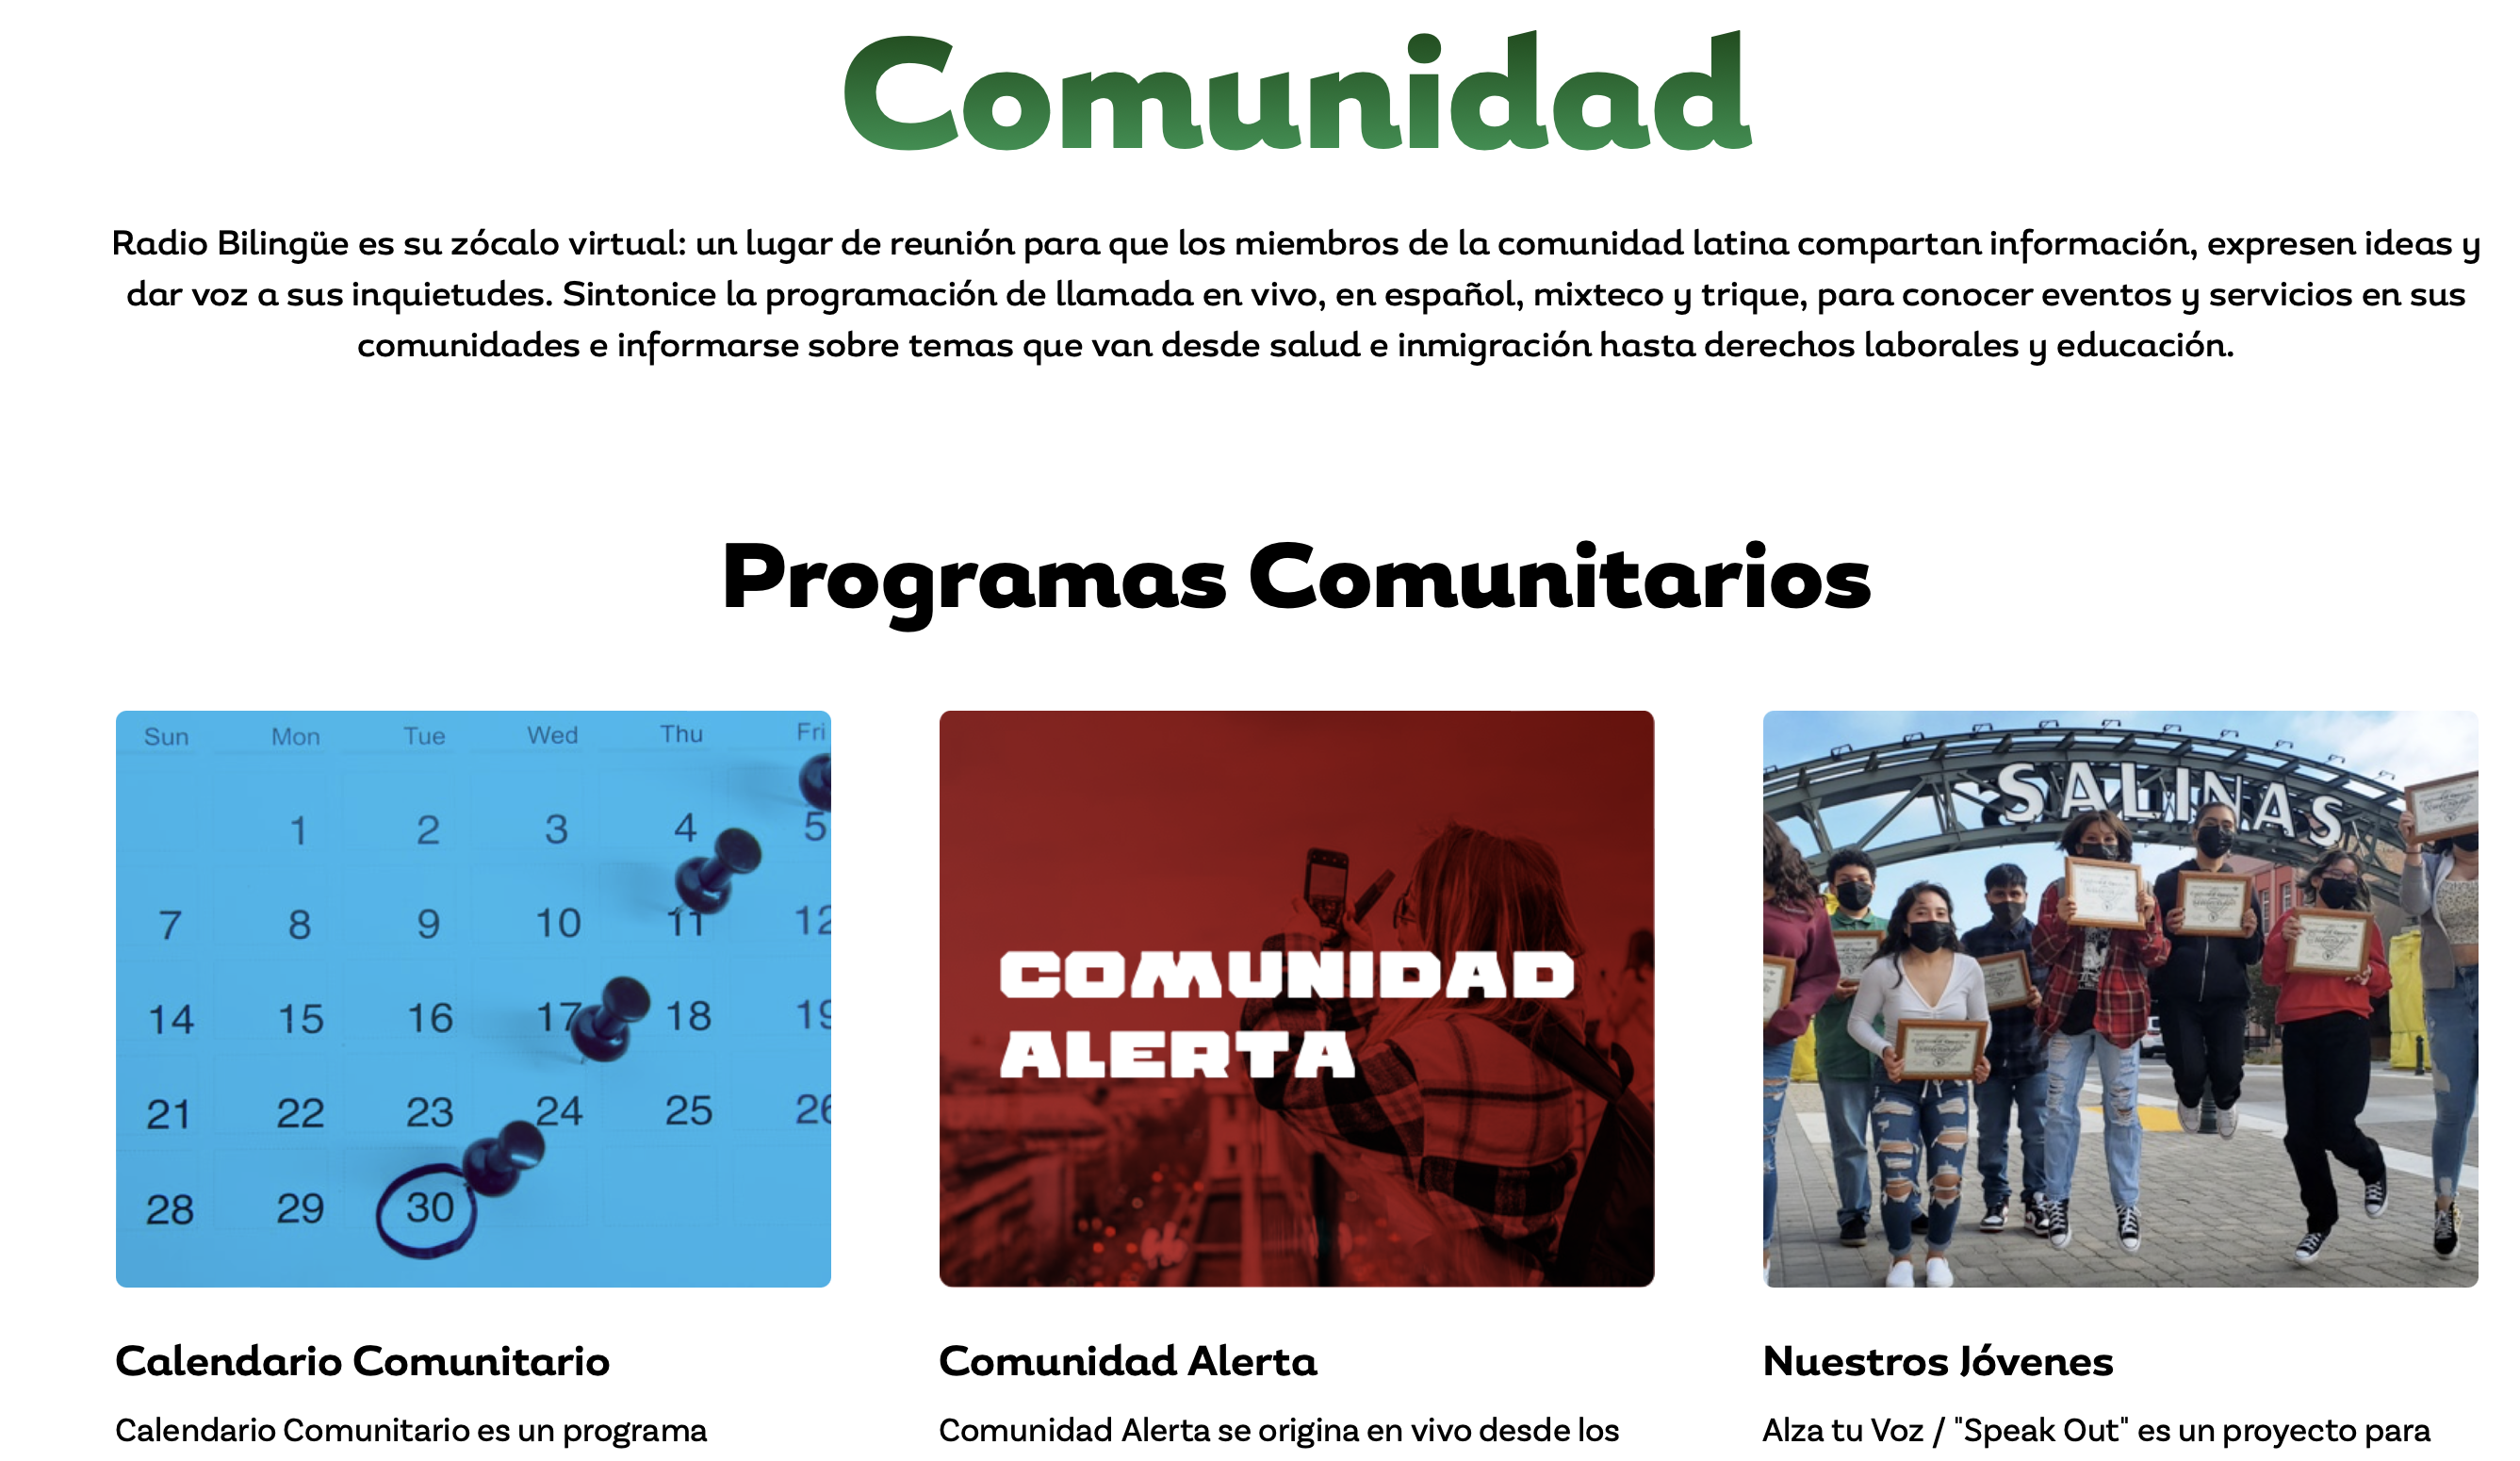 Radio Bilingüe lanza un nuevo sitio web